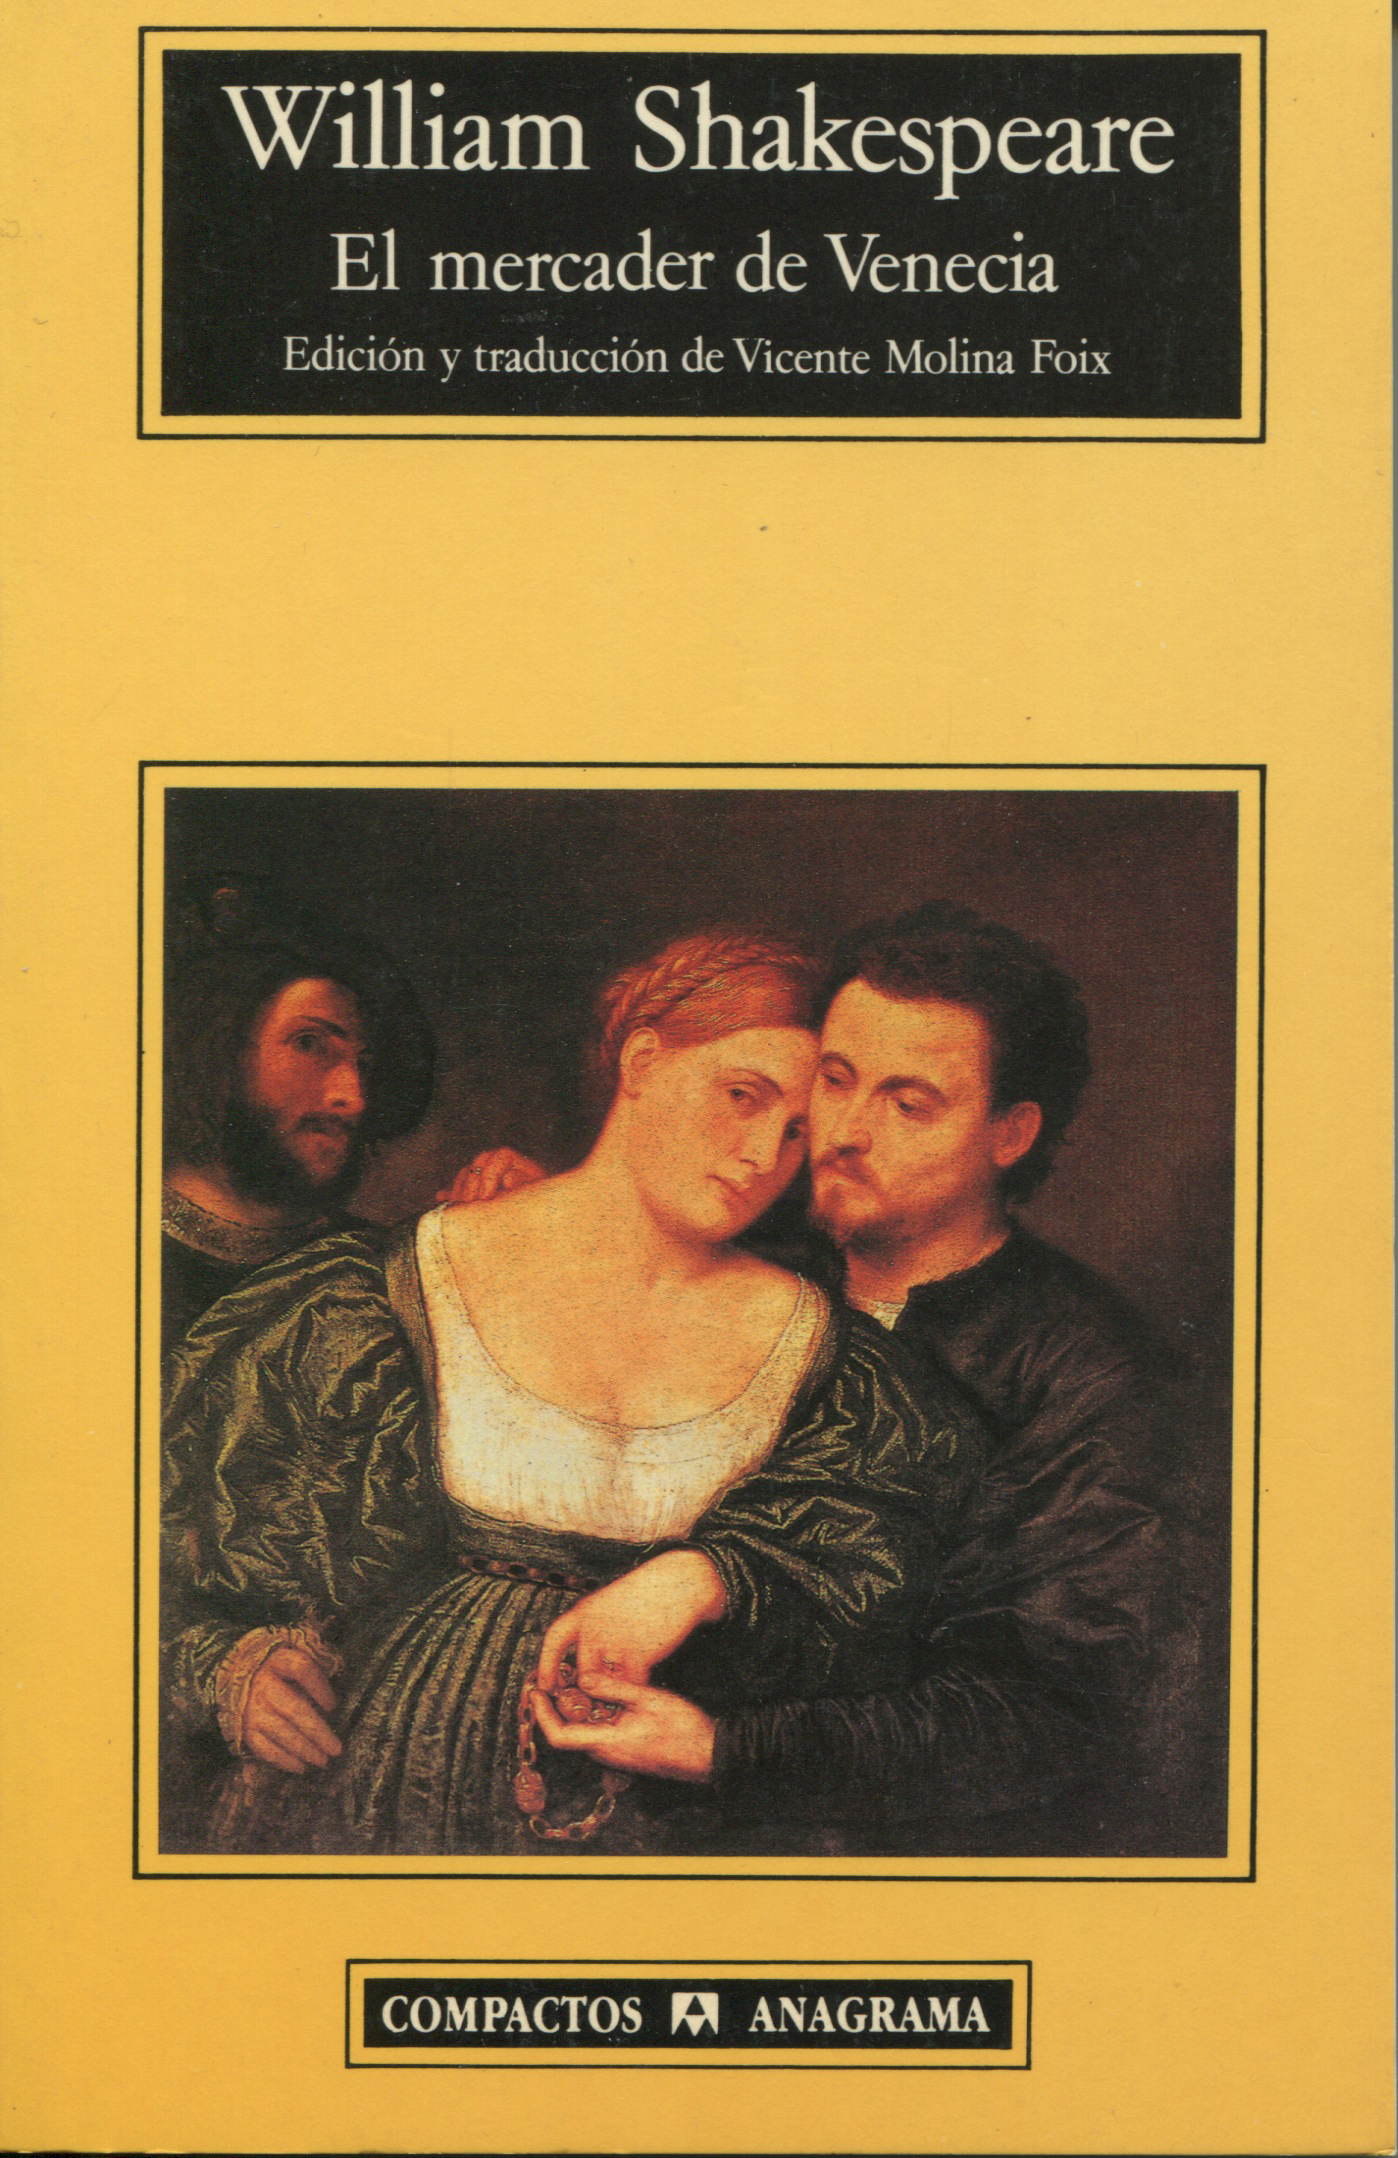 El mercader de Venecia - Shakespeare, William - 978-84-339-2081-2 - Editorial Anagrama